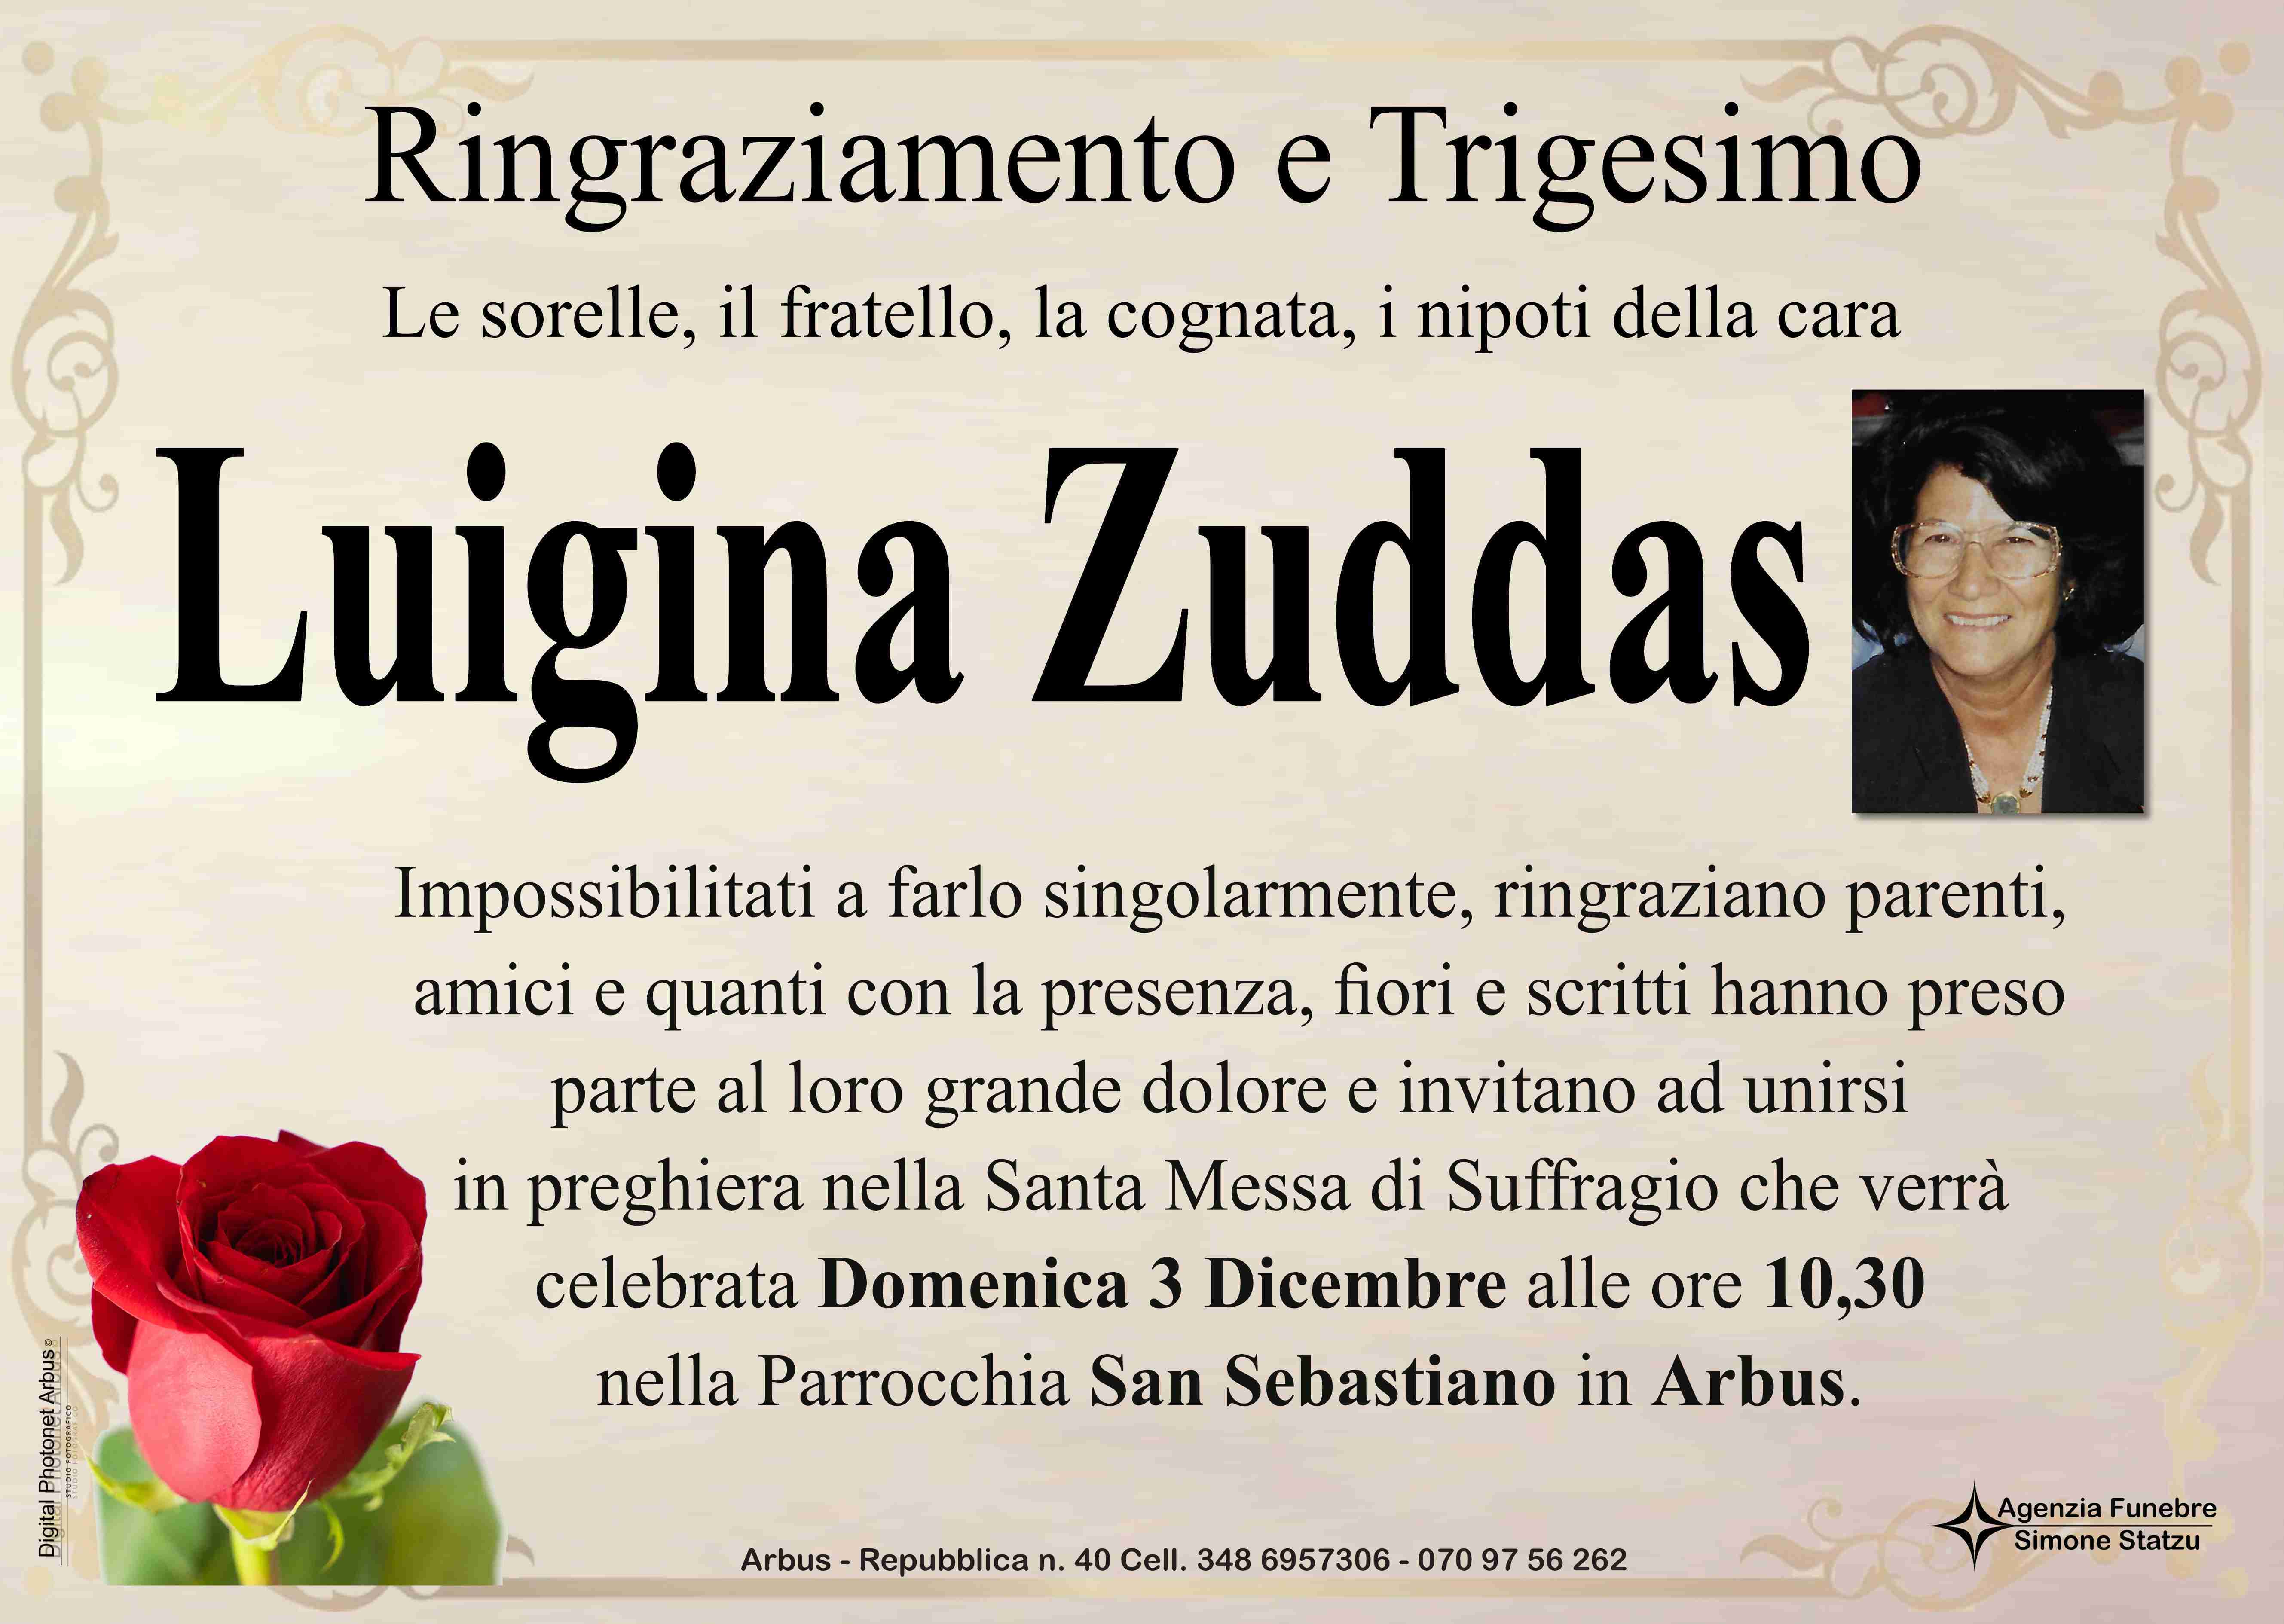 Luigina Zuddas